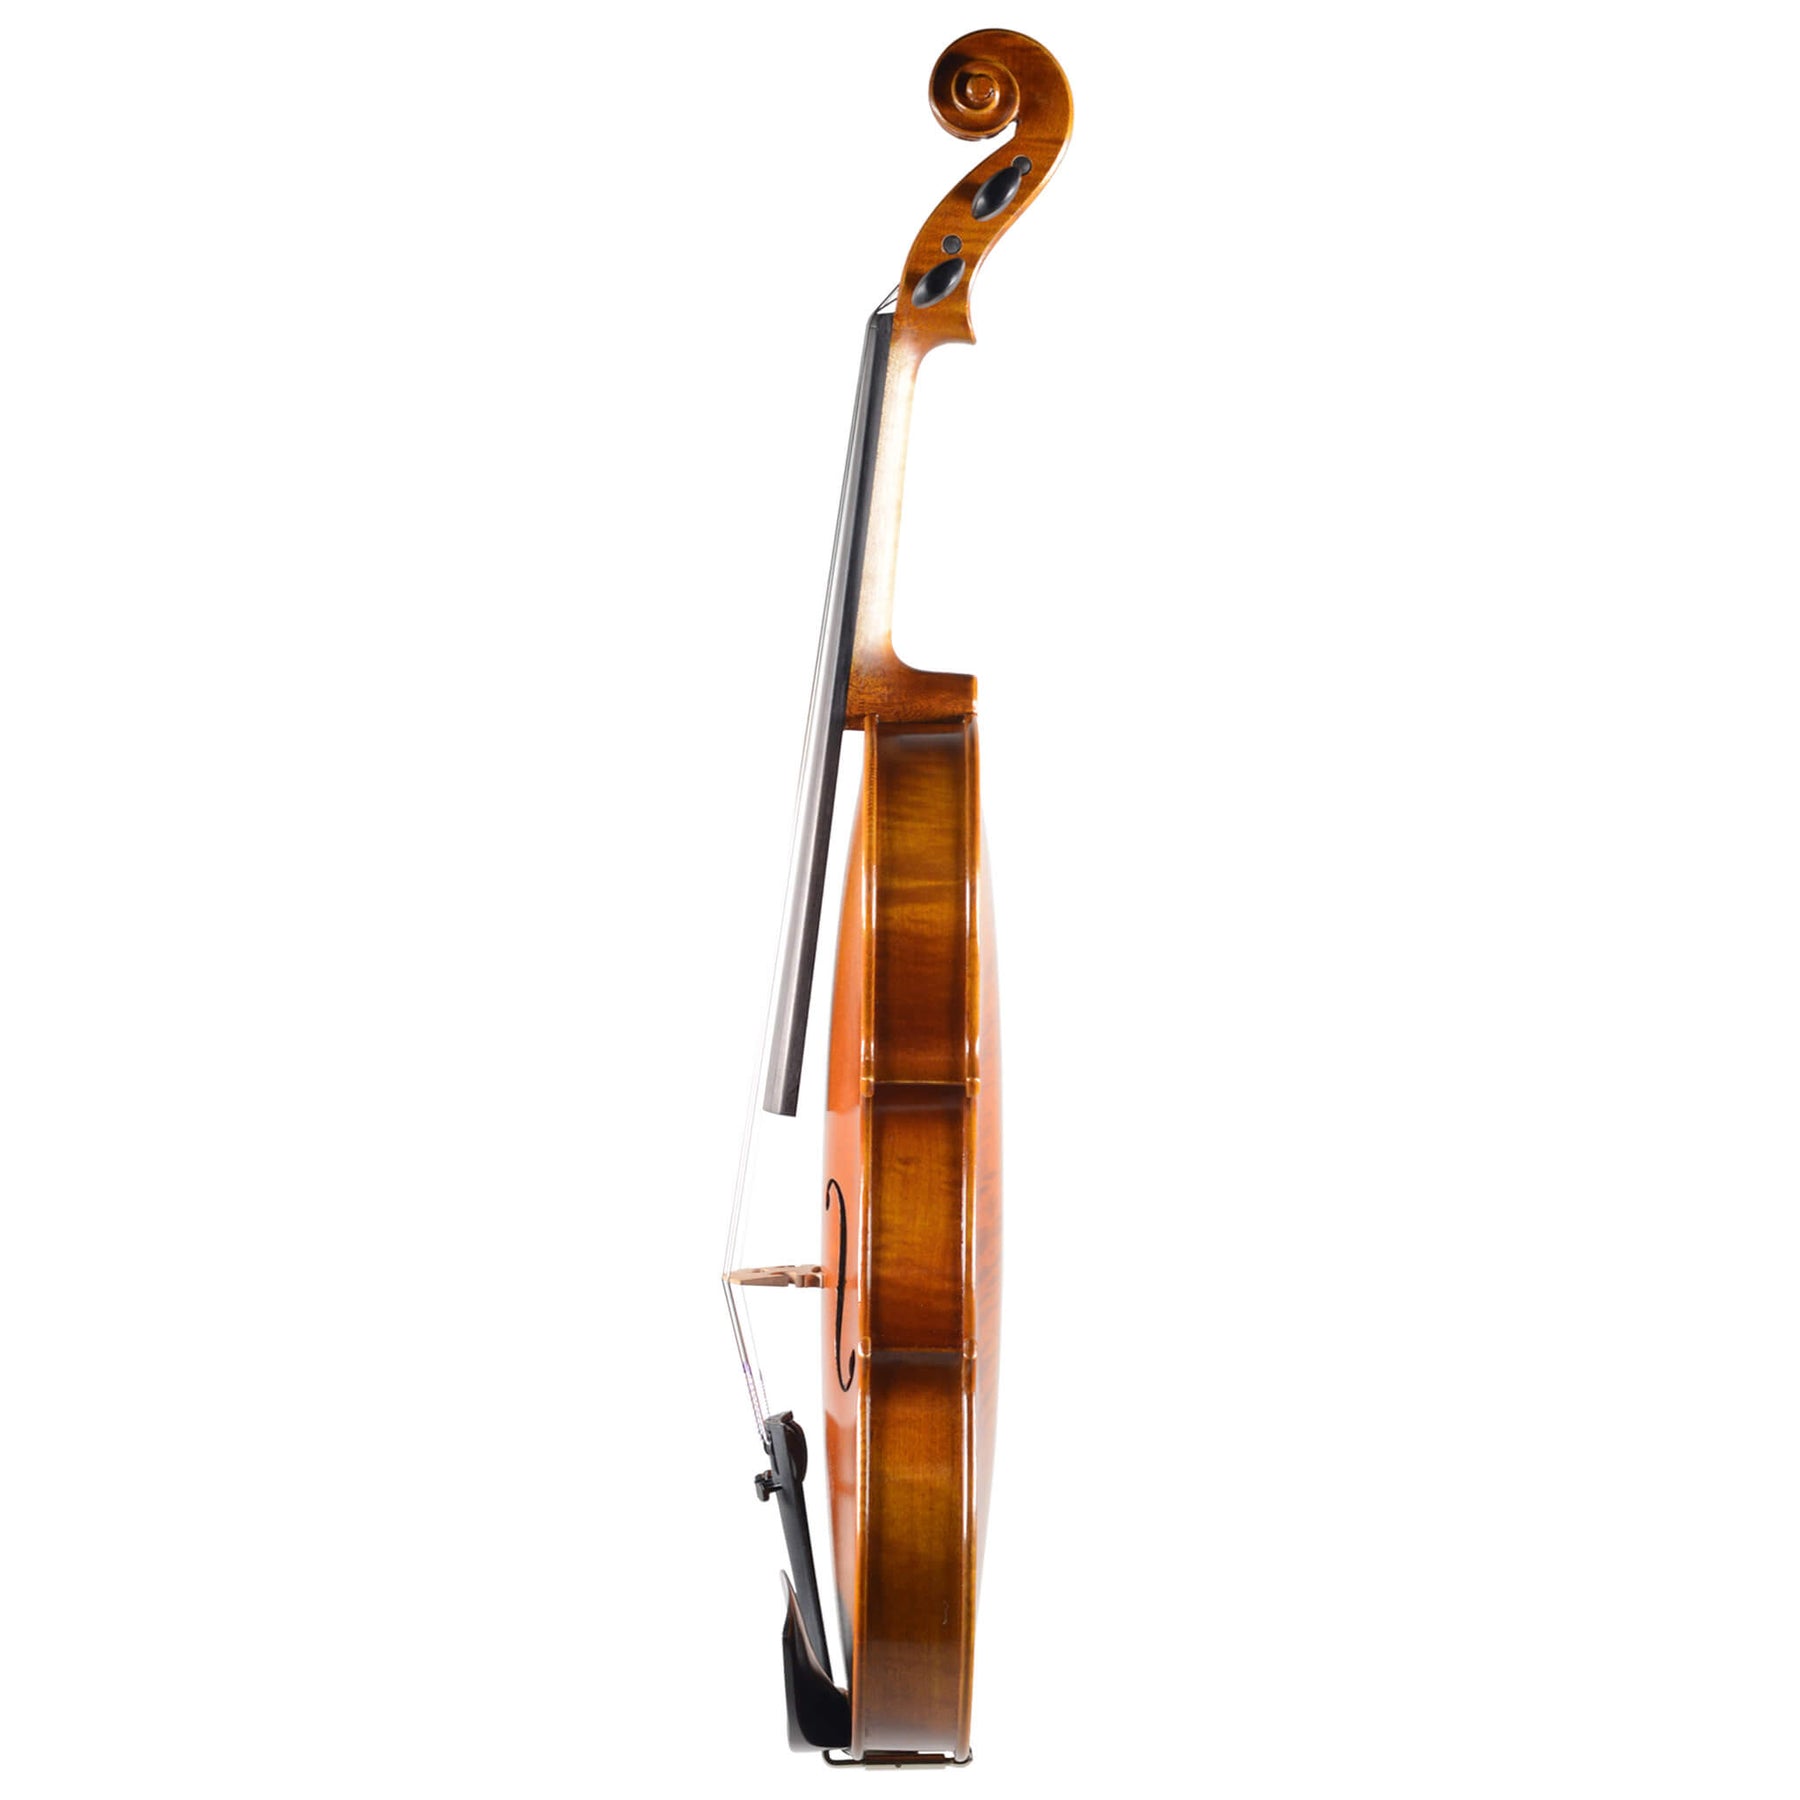 B-Stock Fiddlerman Left Handed Concert Violin Outfit